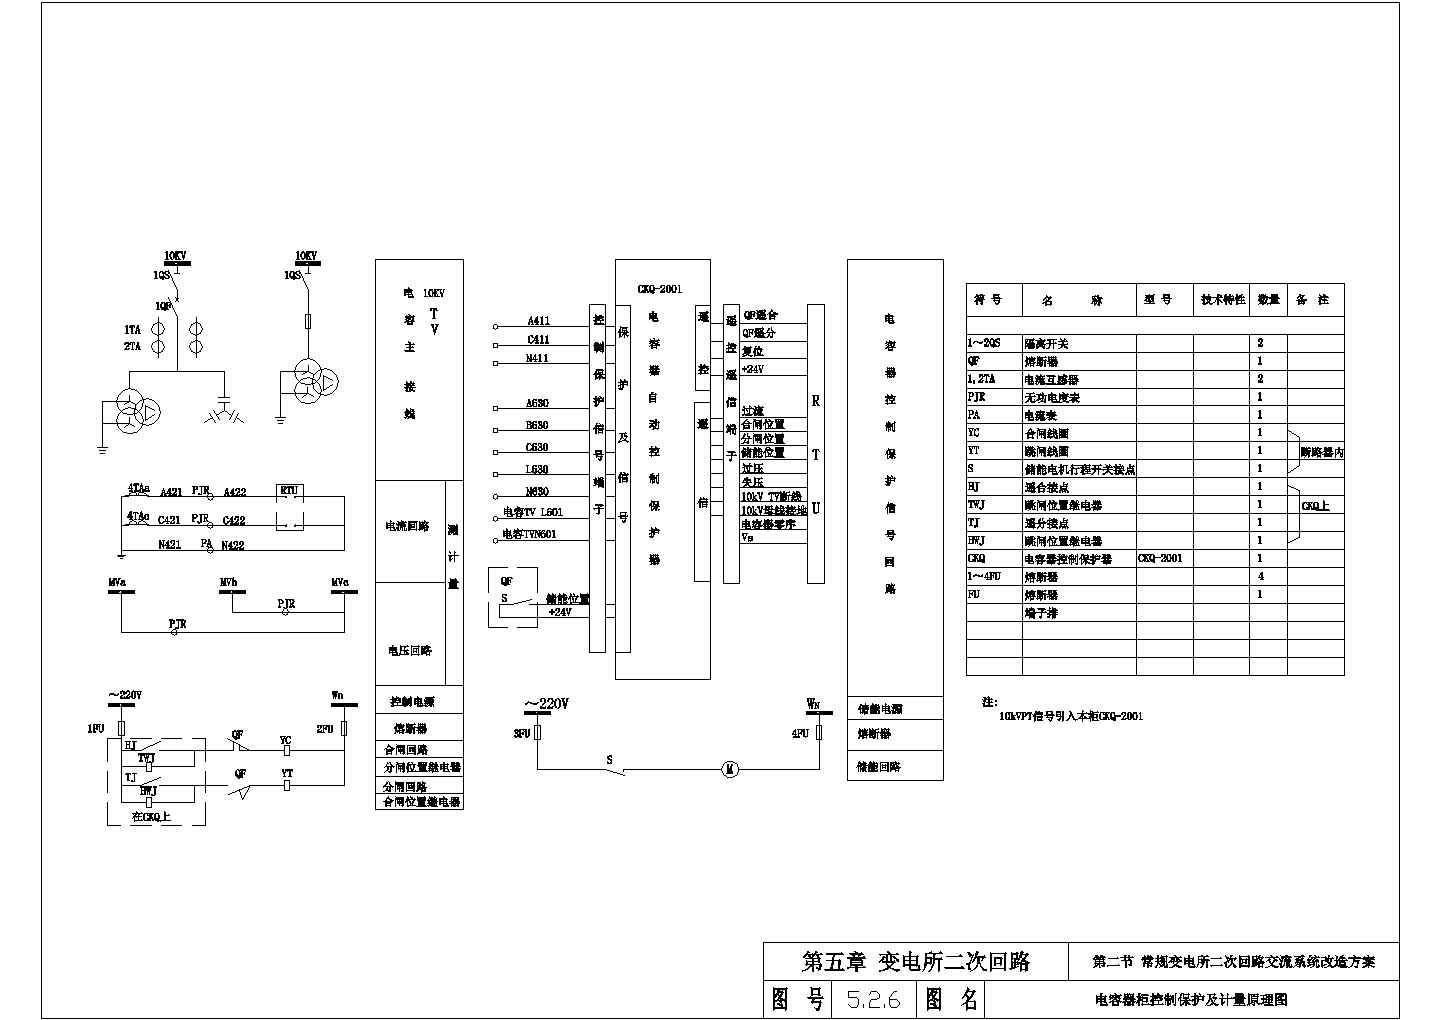 【南通市】某常规变电所电容器柜控制保护及计量原理图